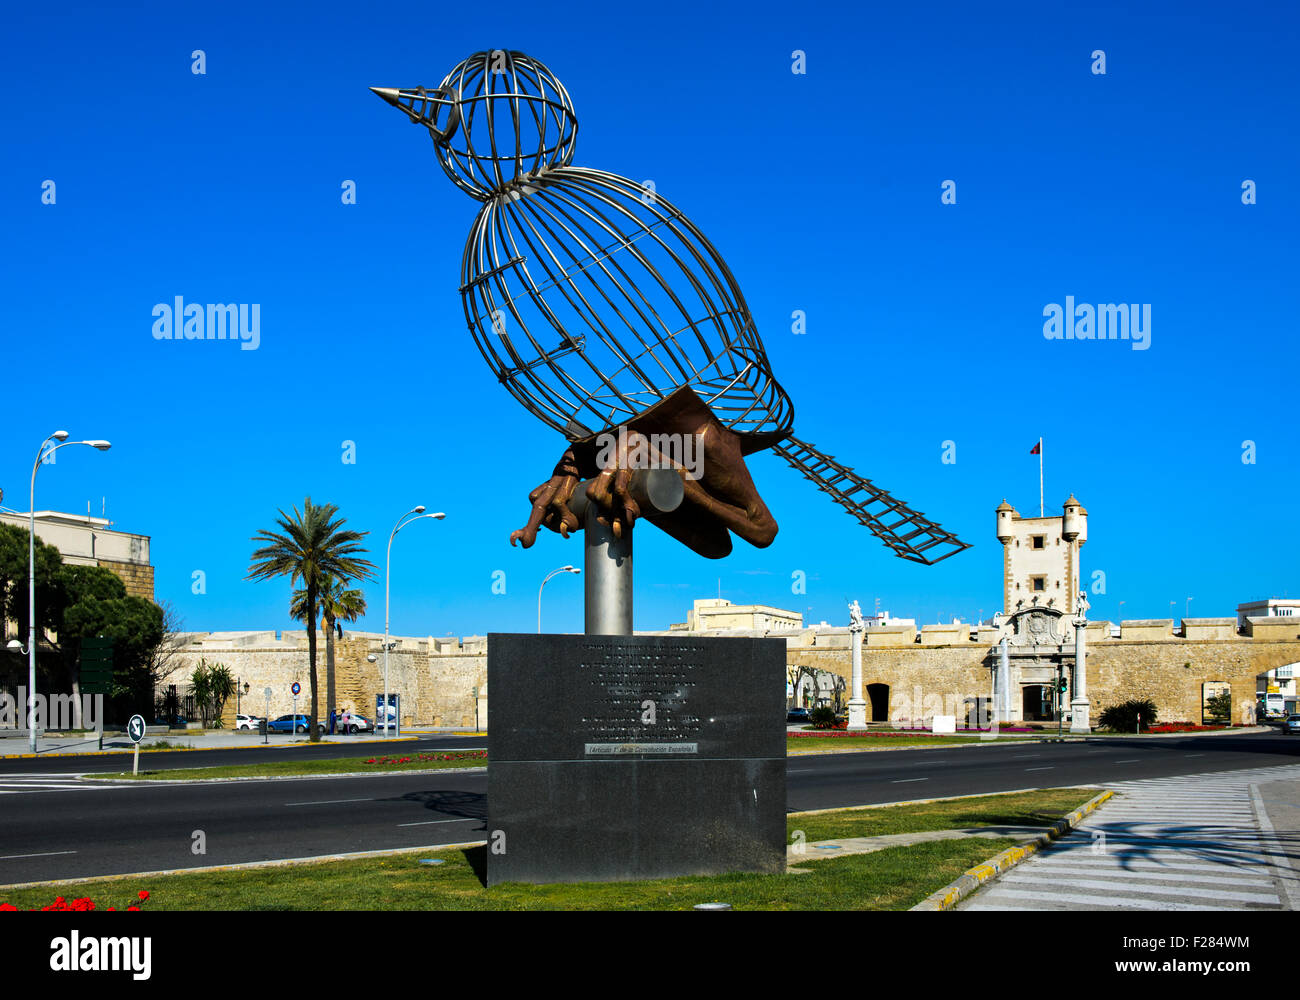 Sculpture oiseau en cage, Pájaro-Jaula, par Luis Quintero, Plaza de la Constitucion, Cádiz, Andalousie, Espagne Banque D'Images